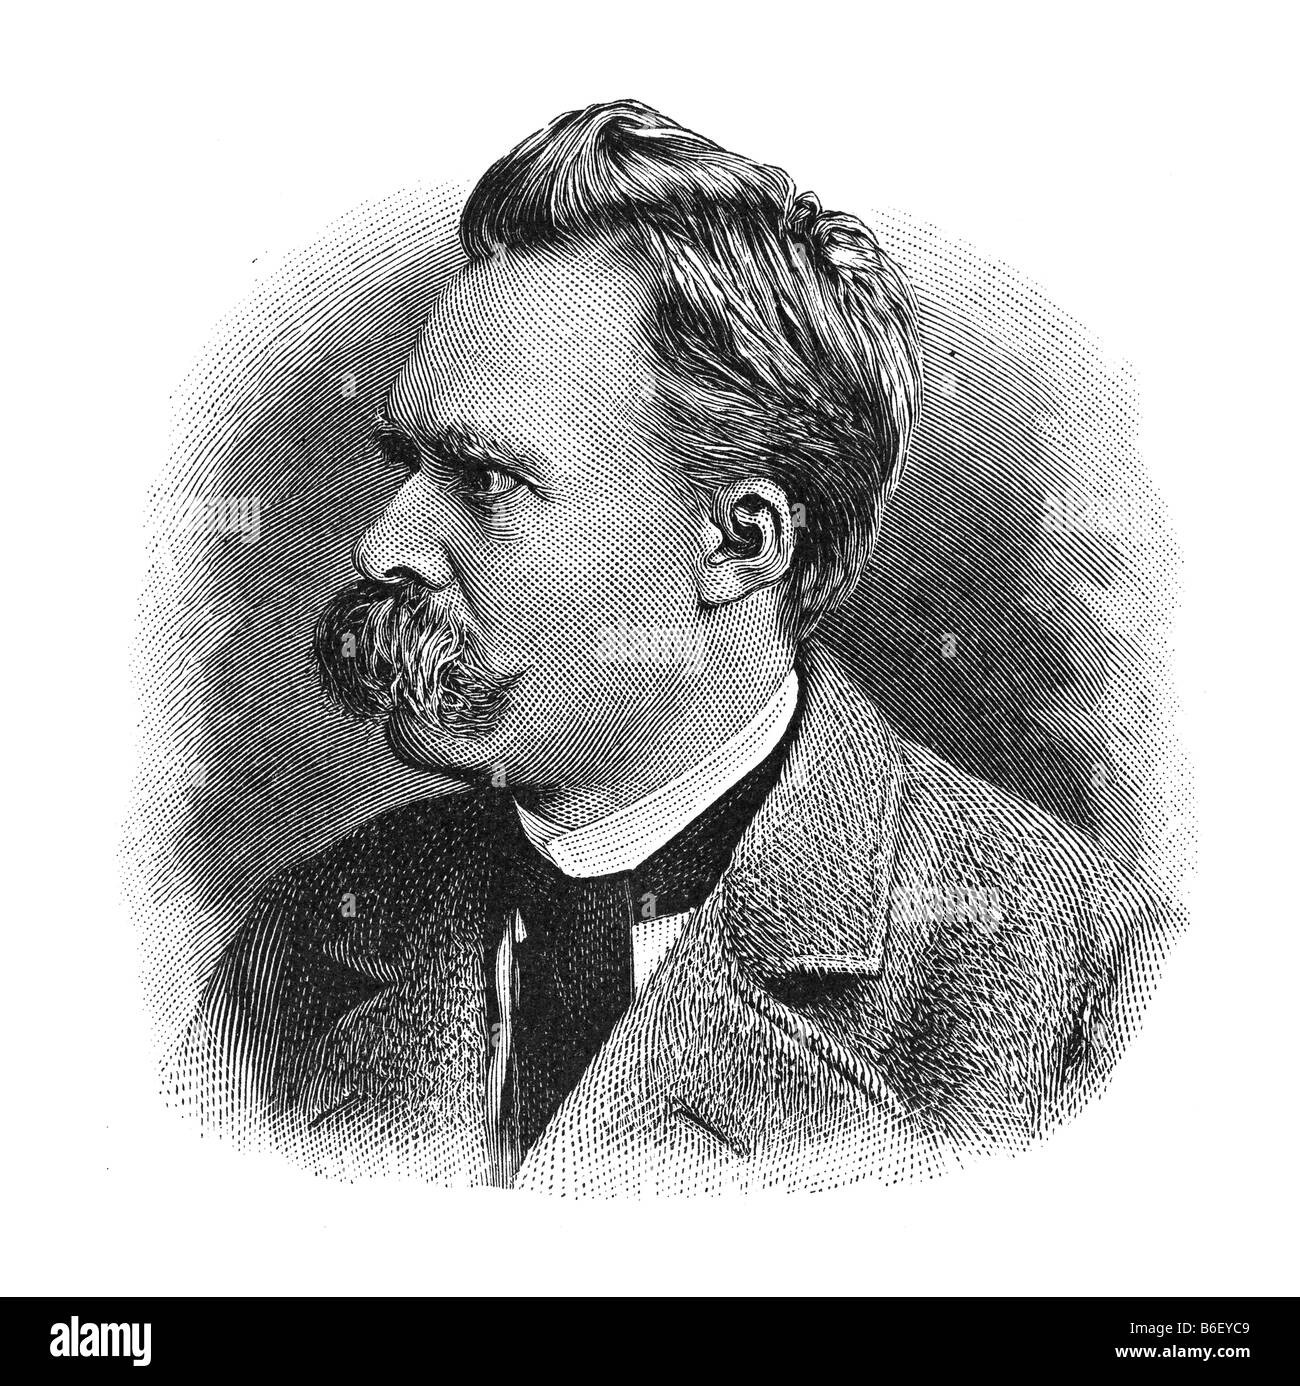 Friedrich Wilhelm Nietzsche, 15. October 1844 Röcken near Luetzen - 25. August 1900 Weimar Stock Photo